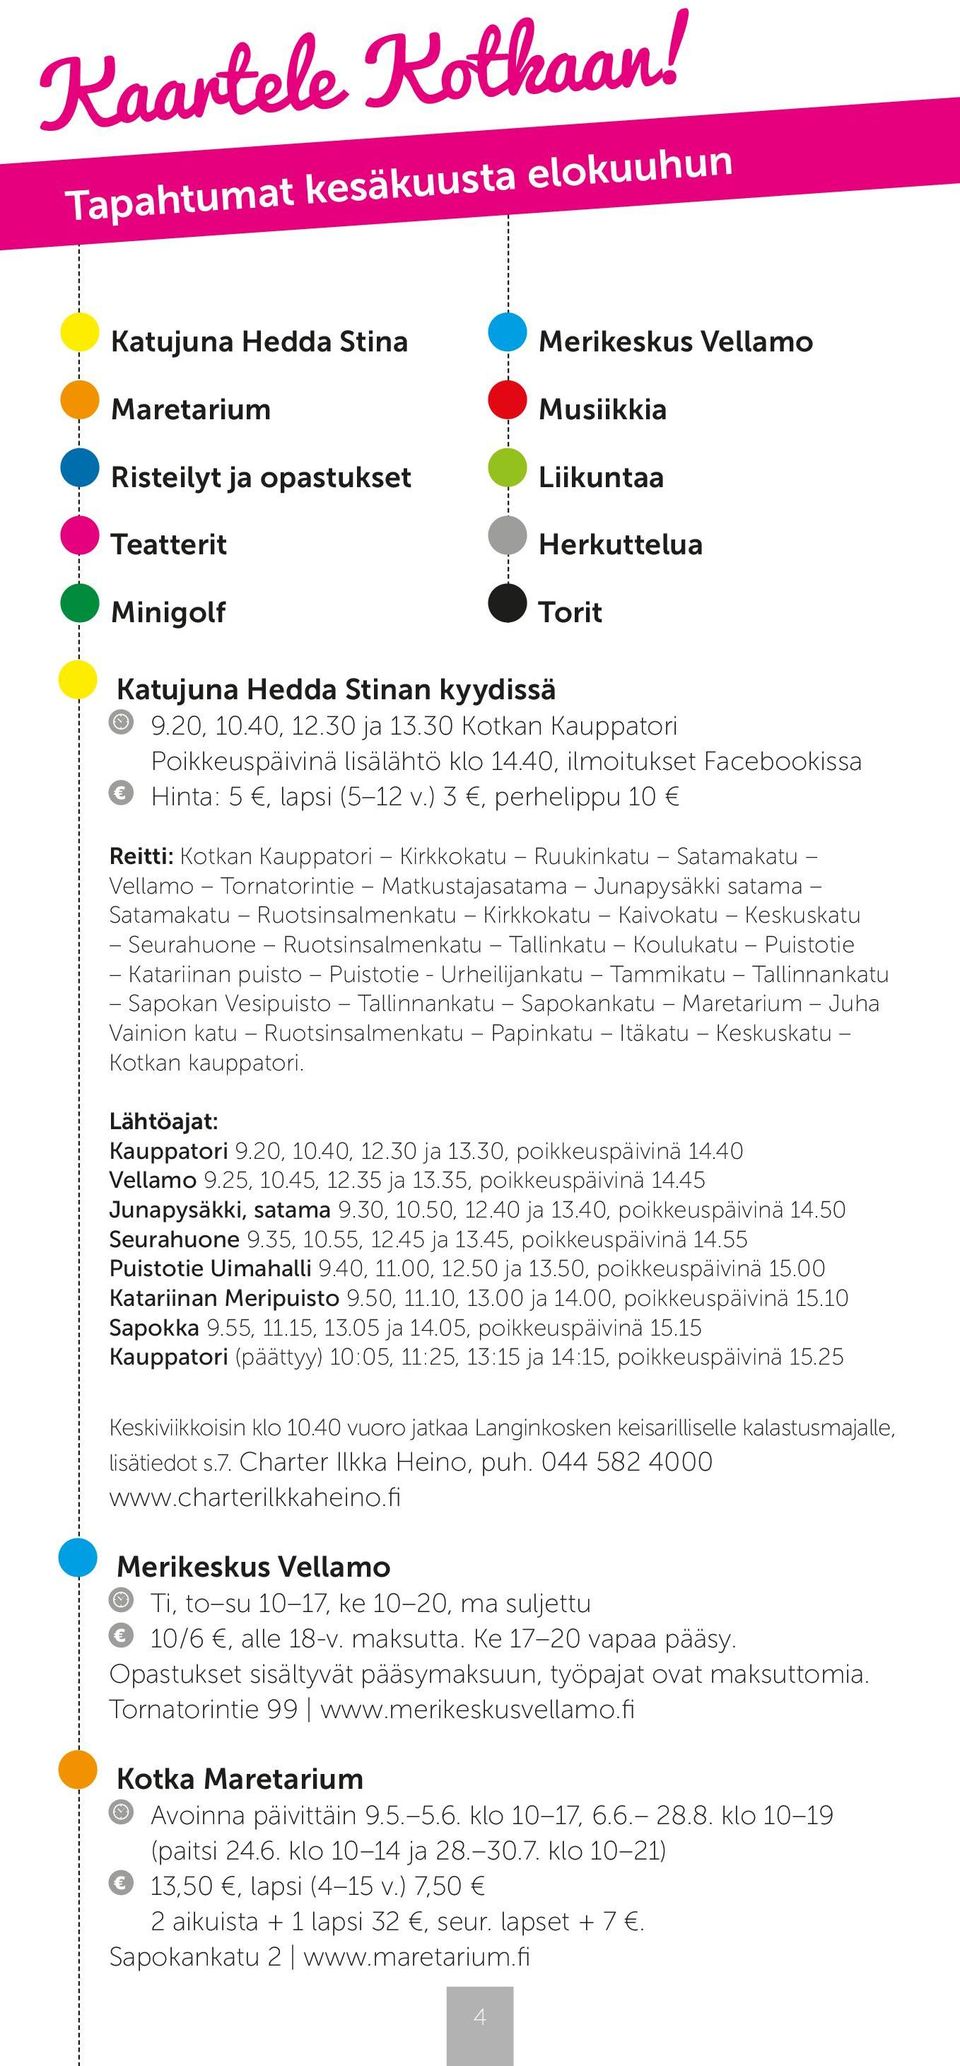 20, 10.40, 12.30 ja 13.30 Kotkan Kauppatori Poikkeuspäivinä lisälähtö klo 14.40, ilmoitukset Facebookissa Hinta: 5, lapsi (5 12 v.